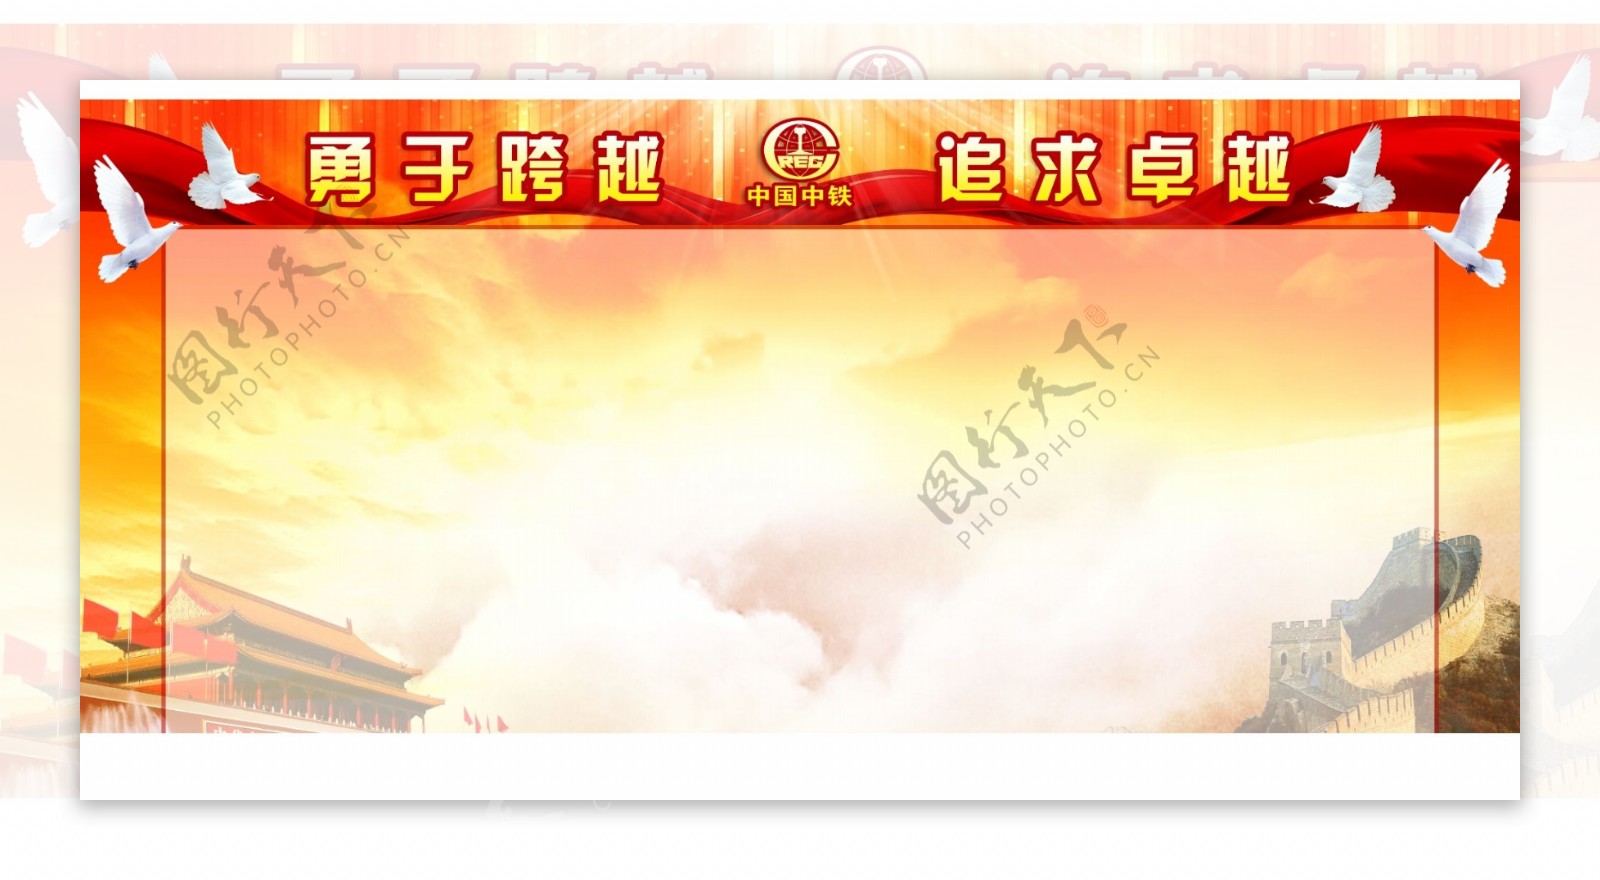 中铁党建党政橱窗红色宣传图展板